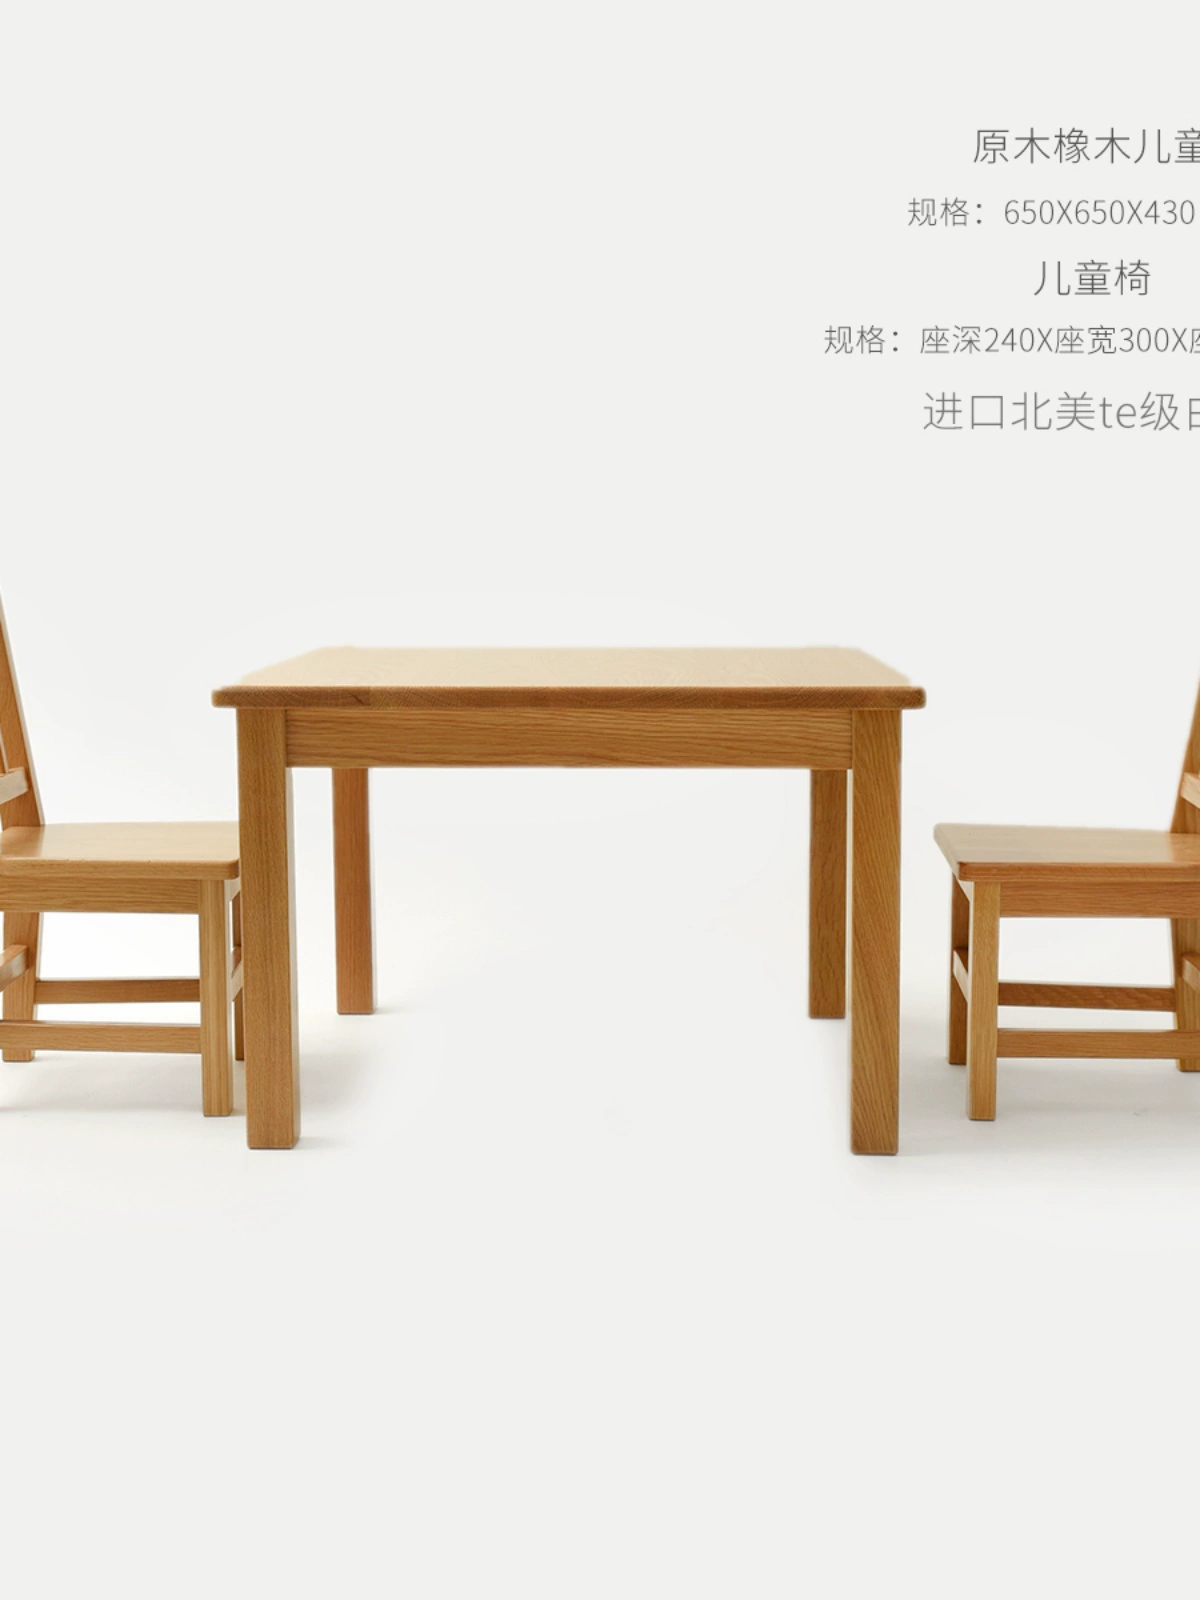 實木兒童桌椅套裝 橡木櫸木 手工桌 小方桌 餐桌椅三件套 (0.7折)